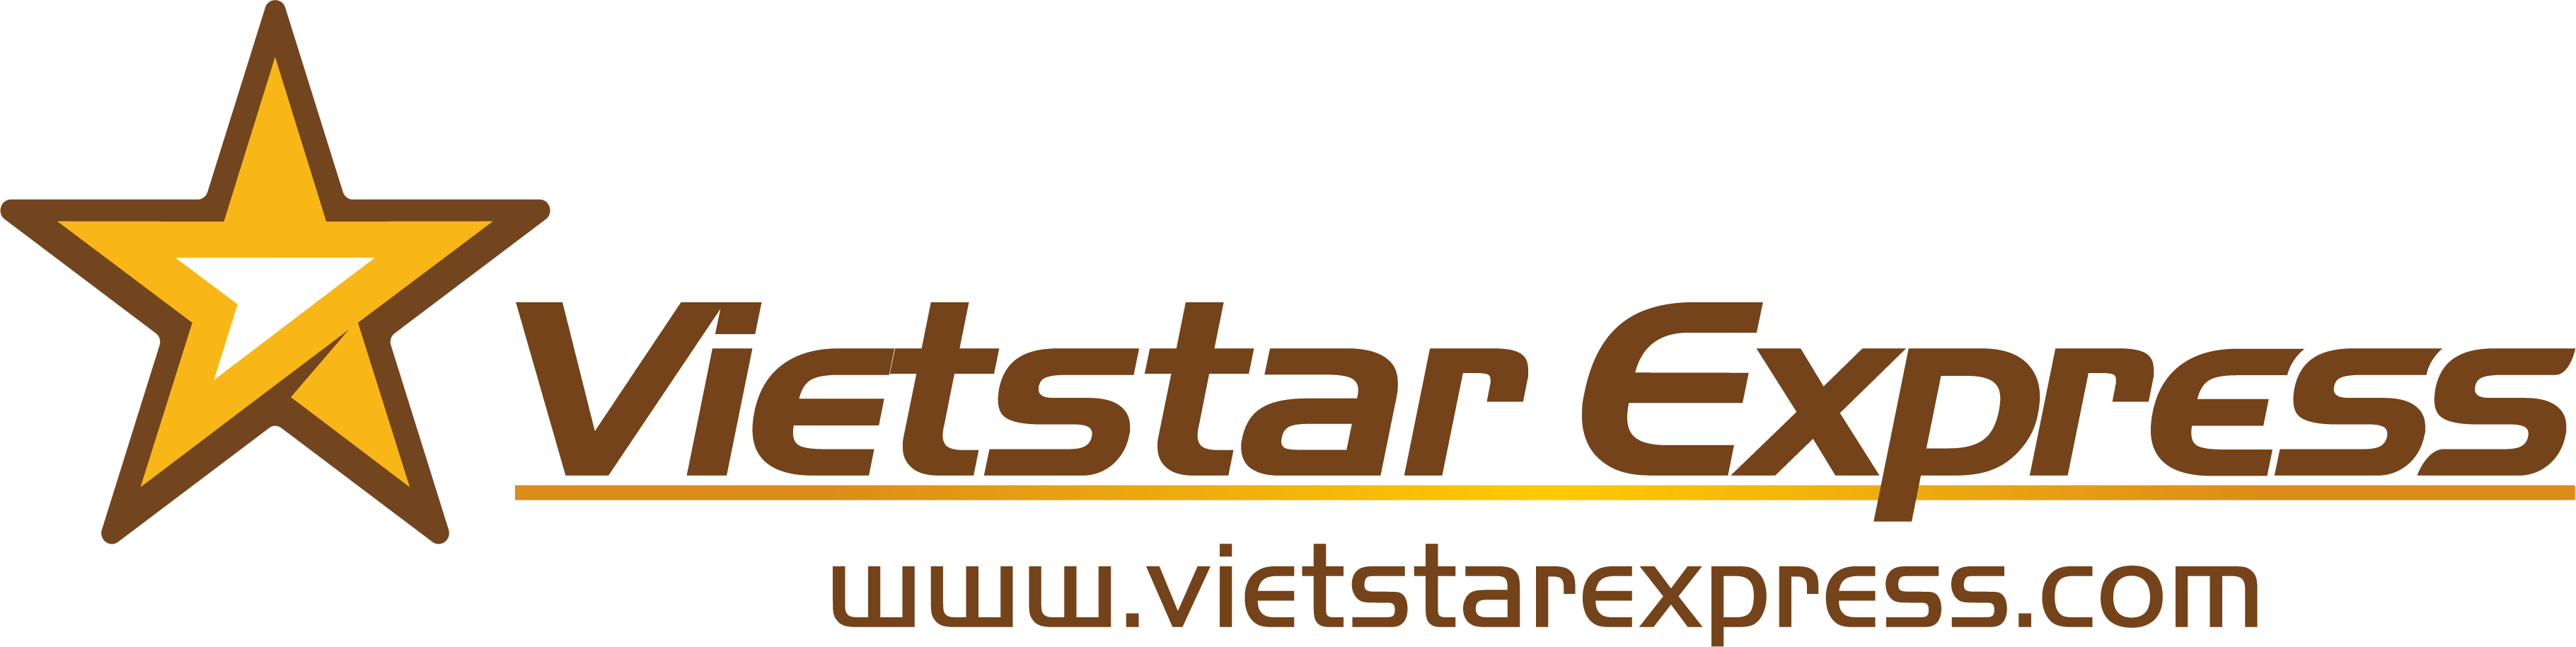 Trang chủ - Vietstar Express